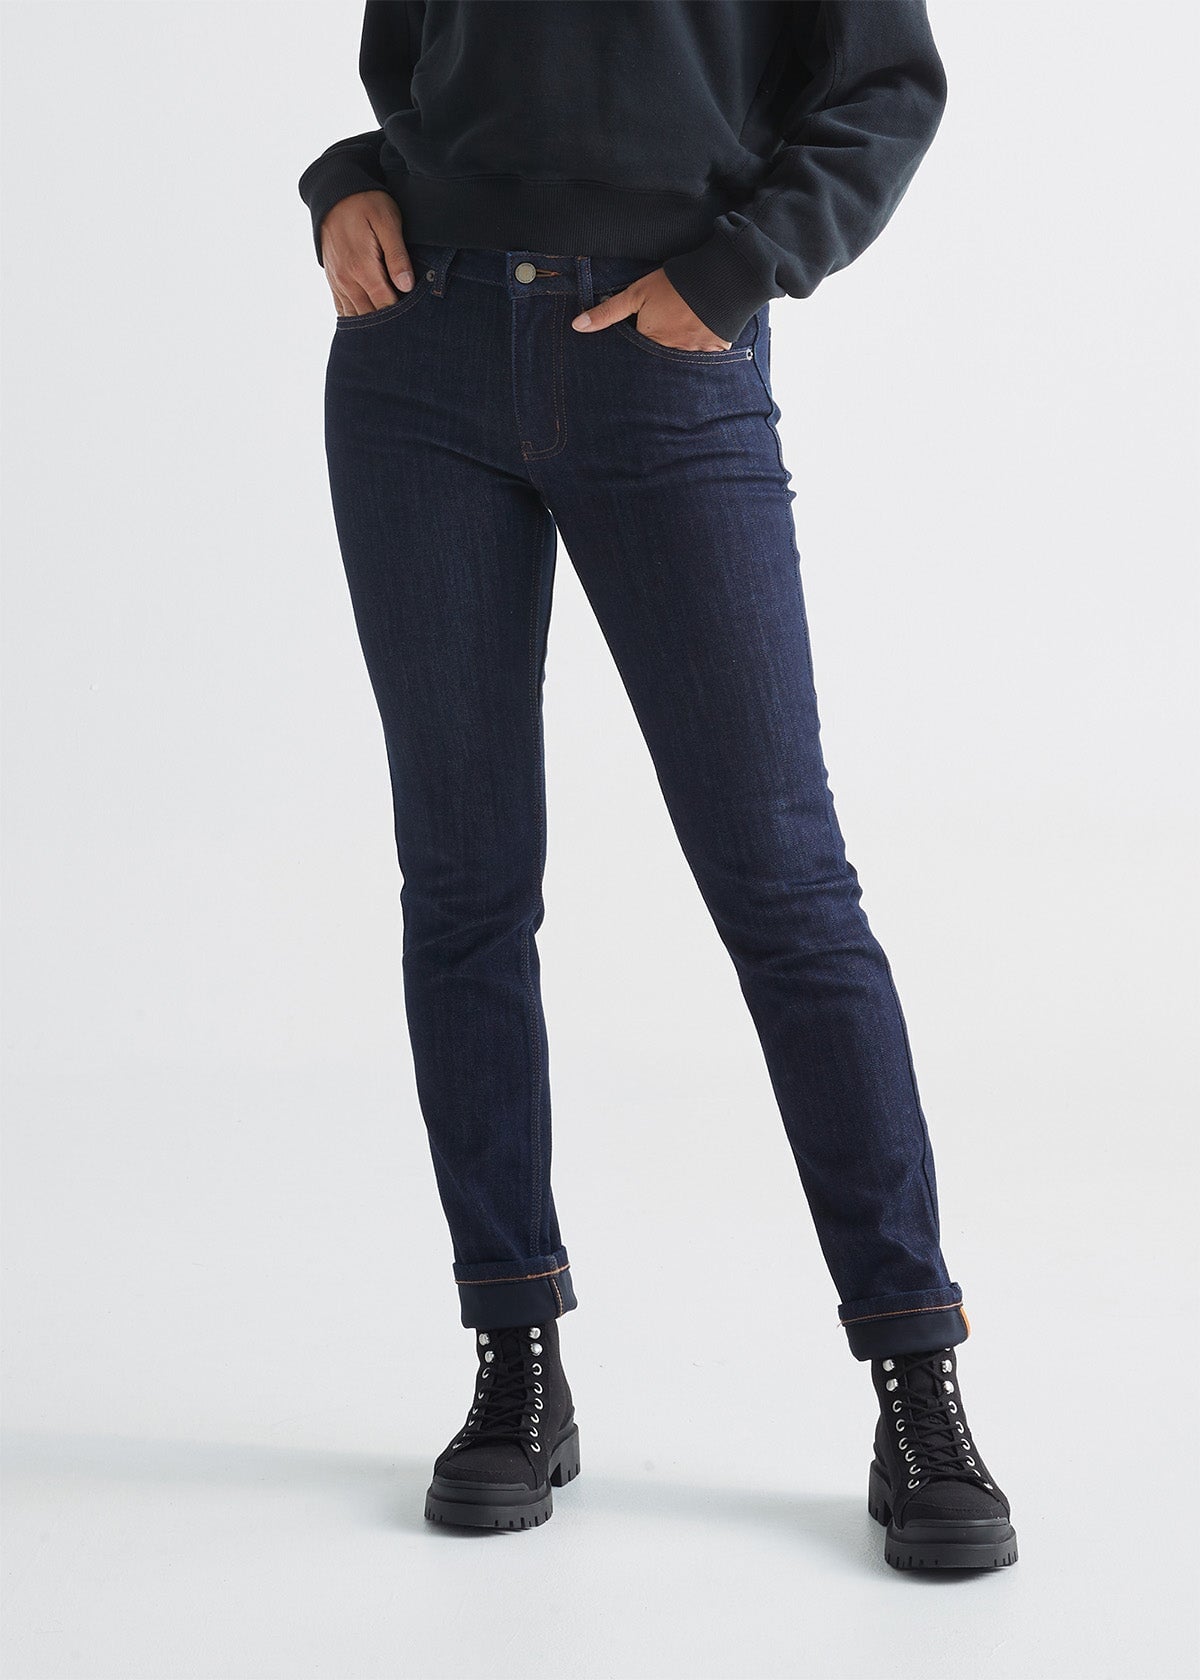 Yyeselk Women's Fleece Lined Jeans for Women Winter Warm Flannel Lined  Jeans Womens High Waisted Skinny Stretch Pants